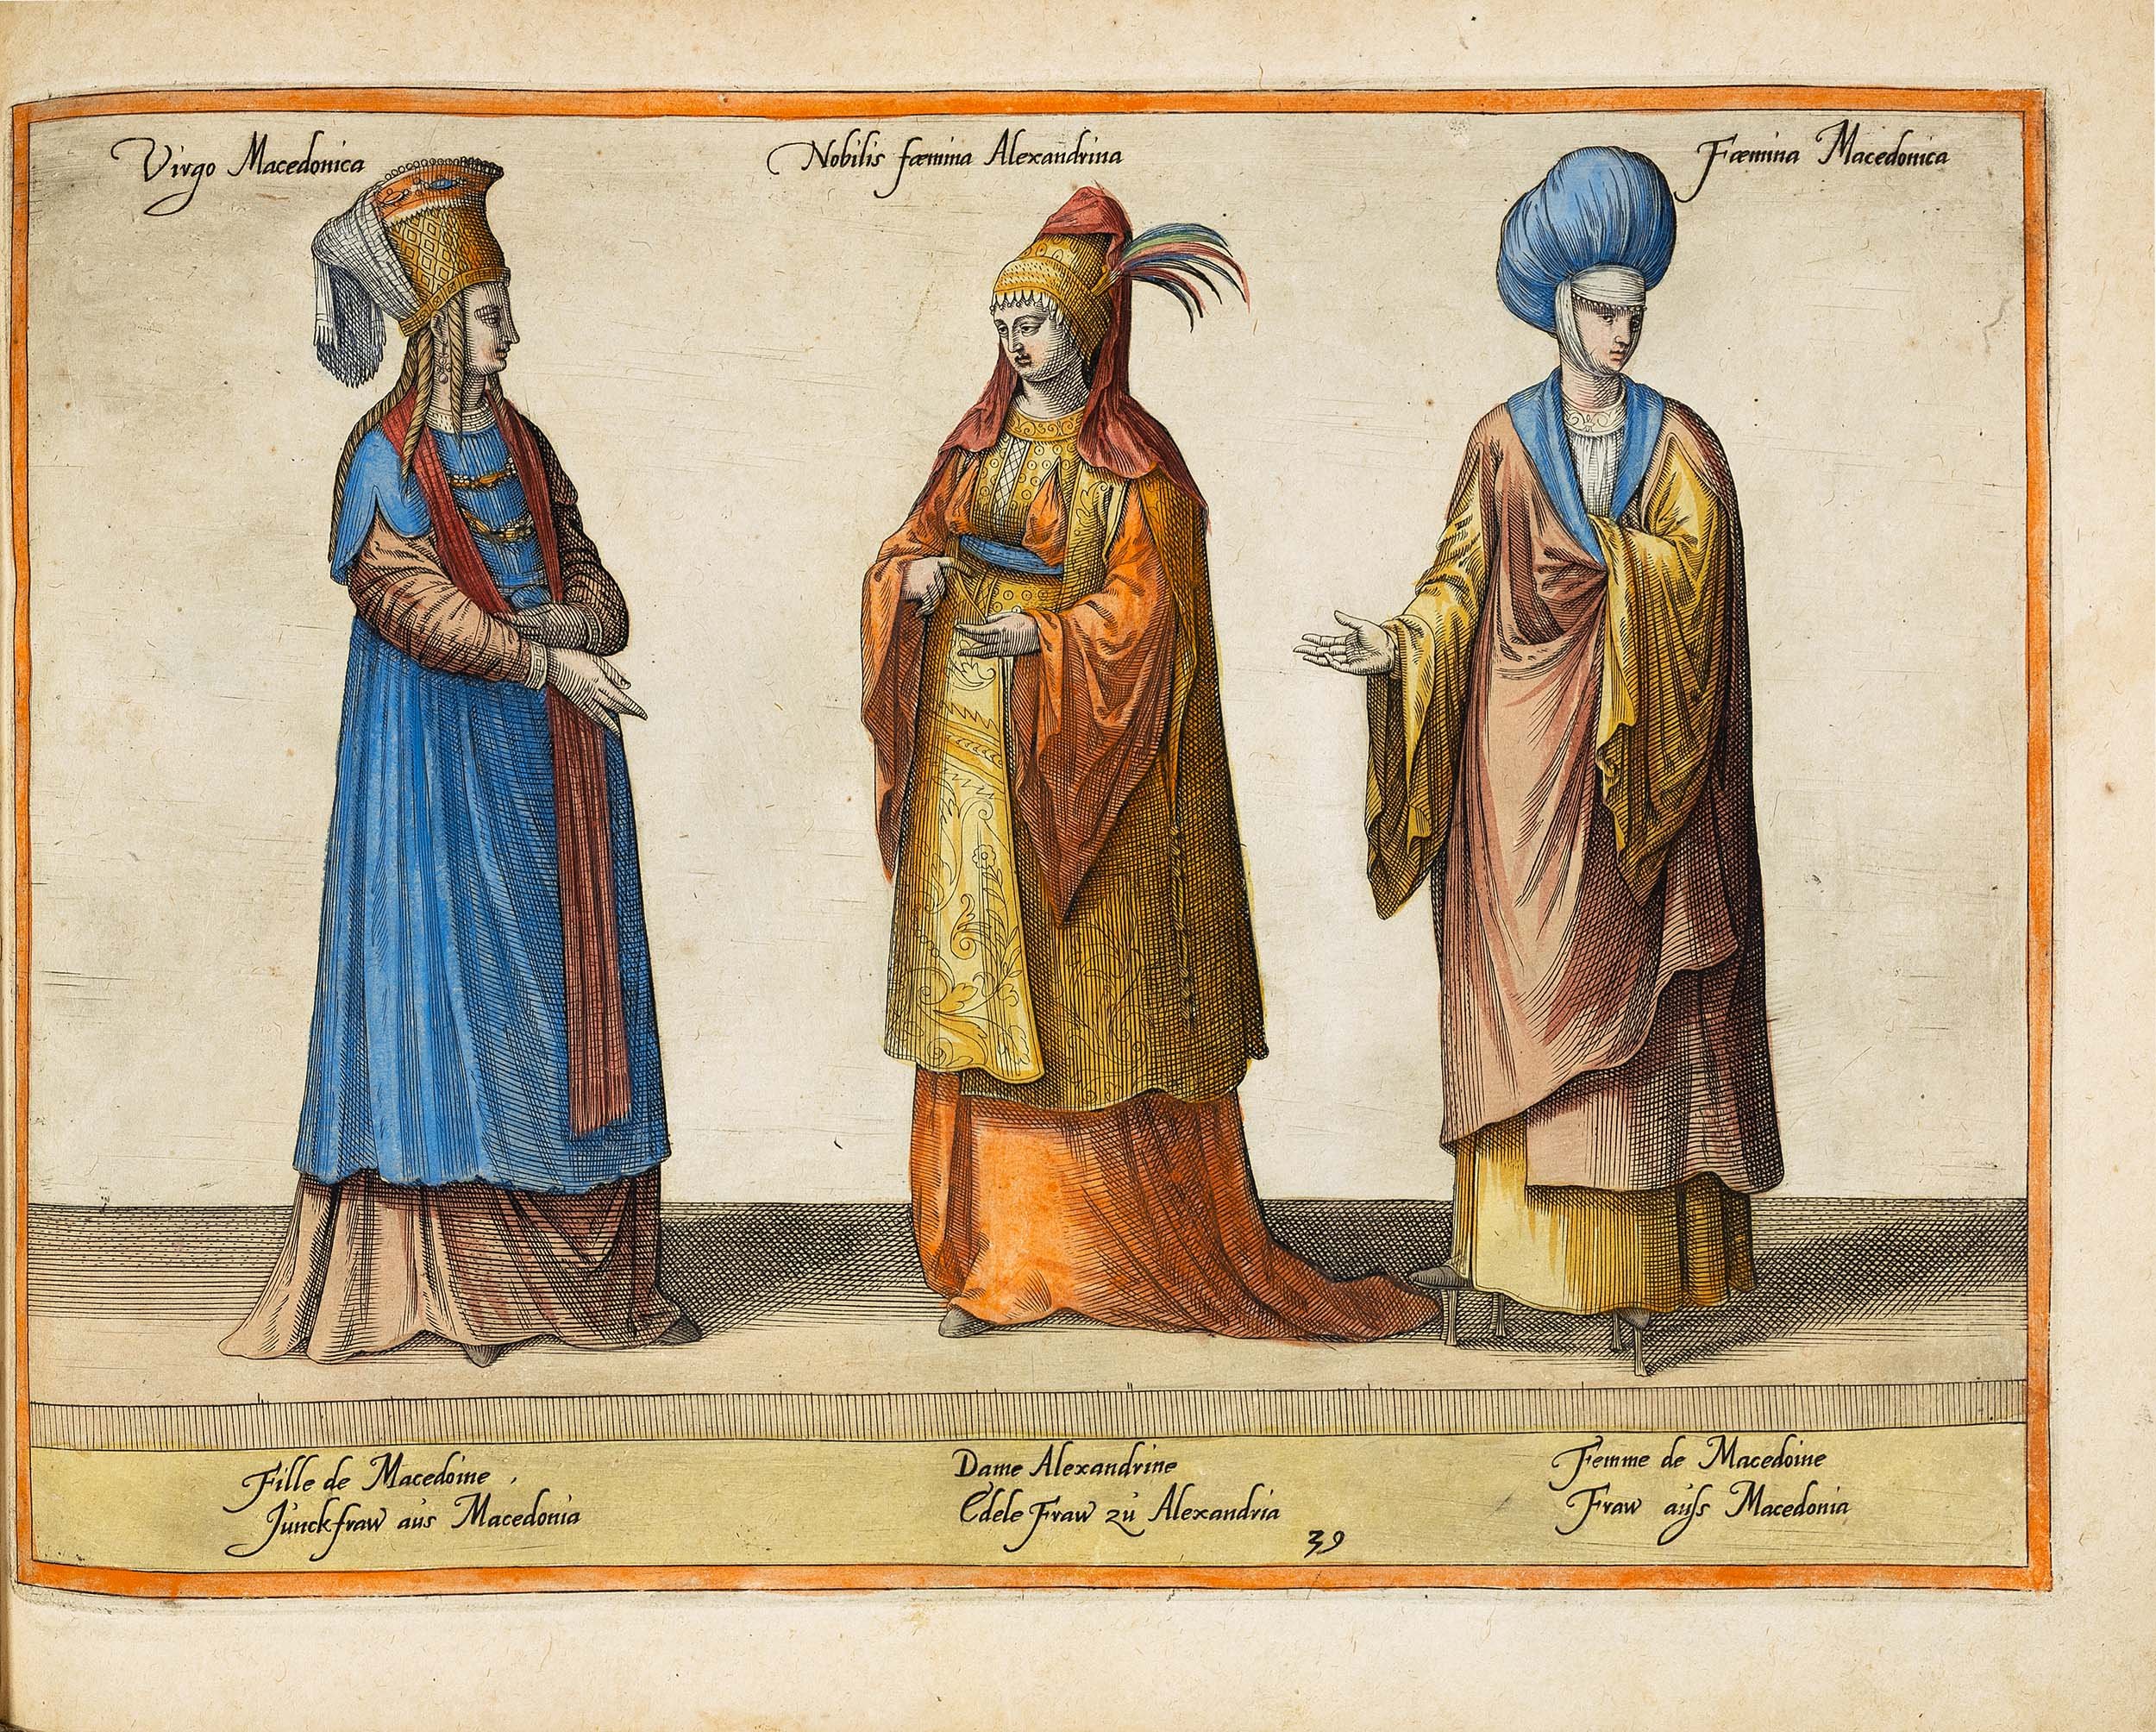 Boissard-habitus-variarum-1581-illuminated-fashion-history-historical-clothing.jpg